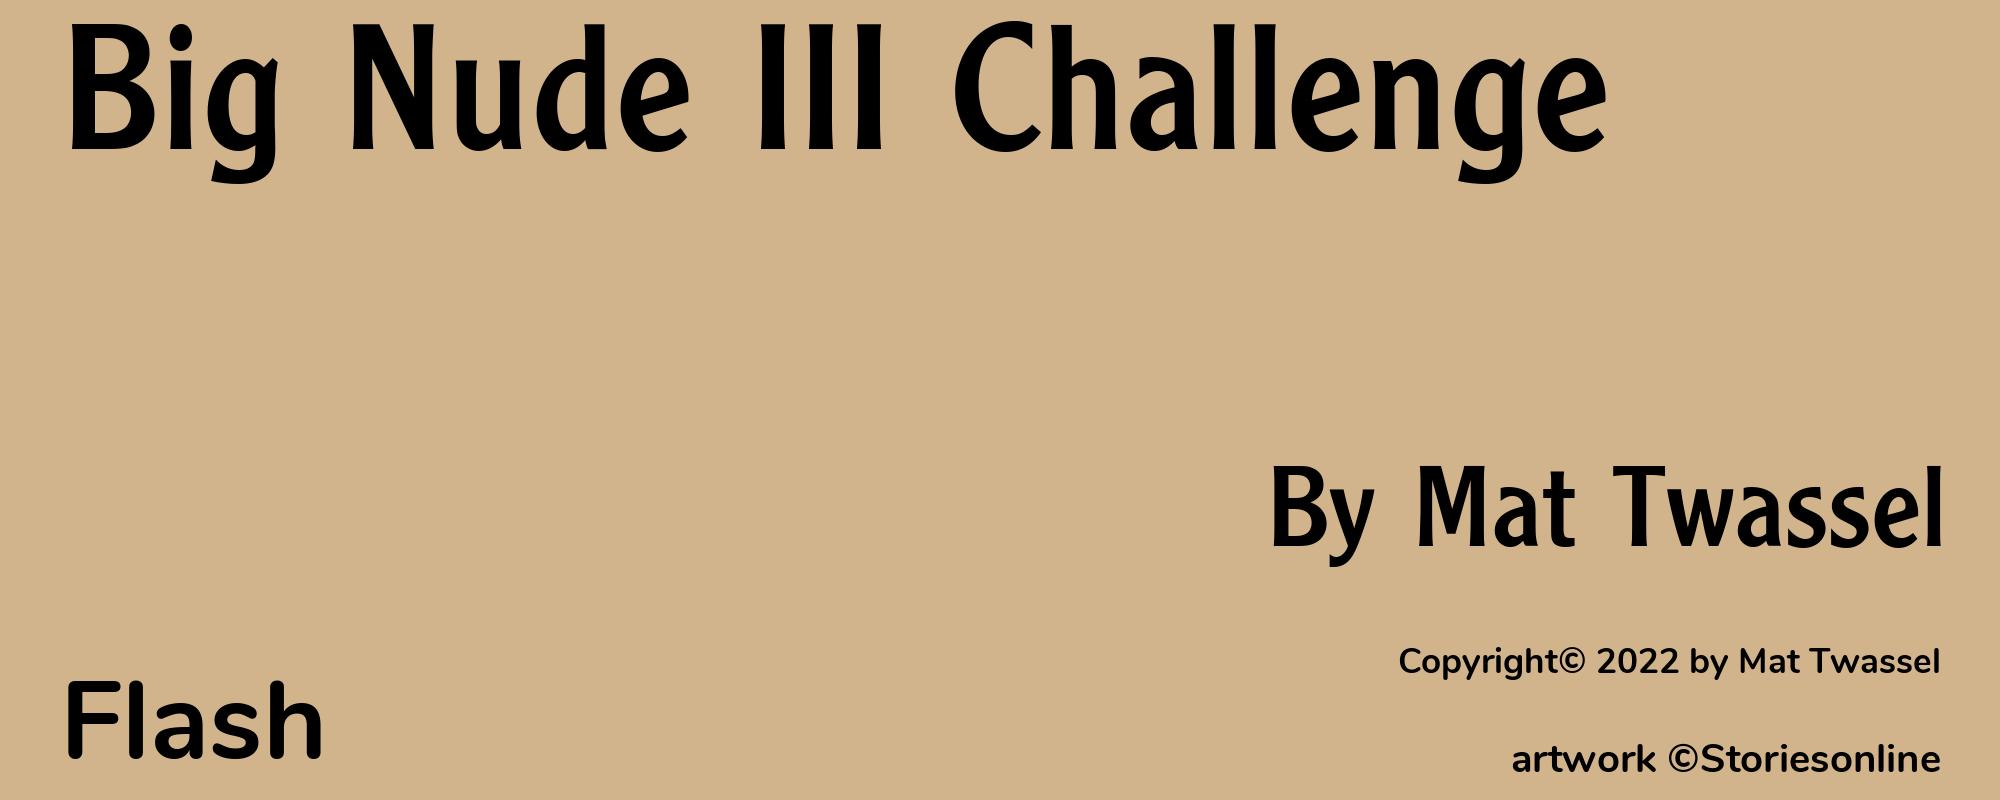 Big Nude III Challenge - Cover